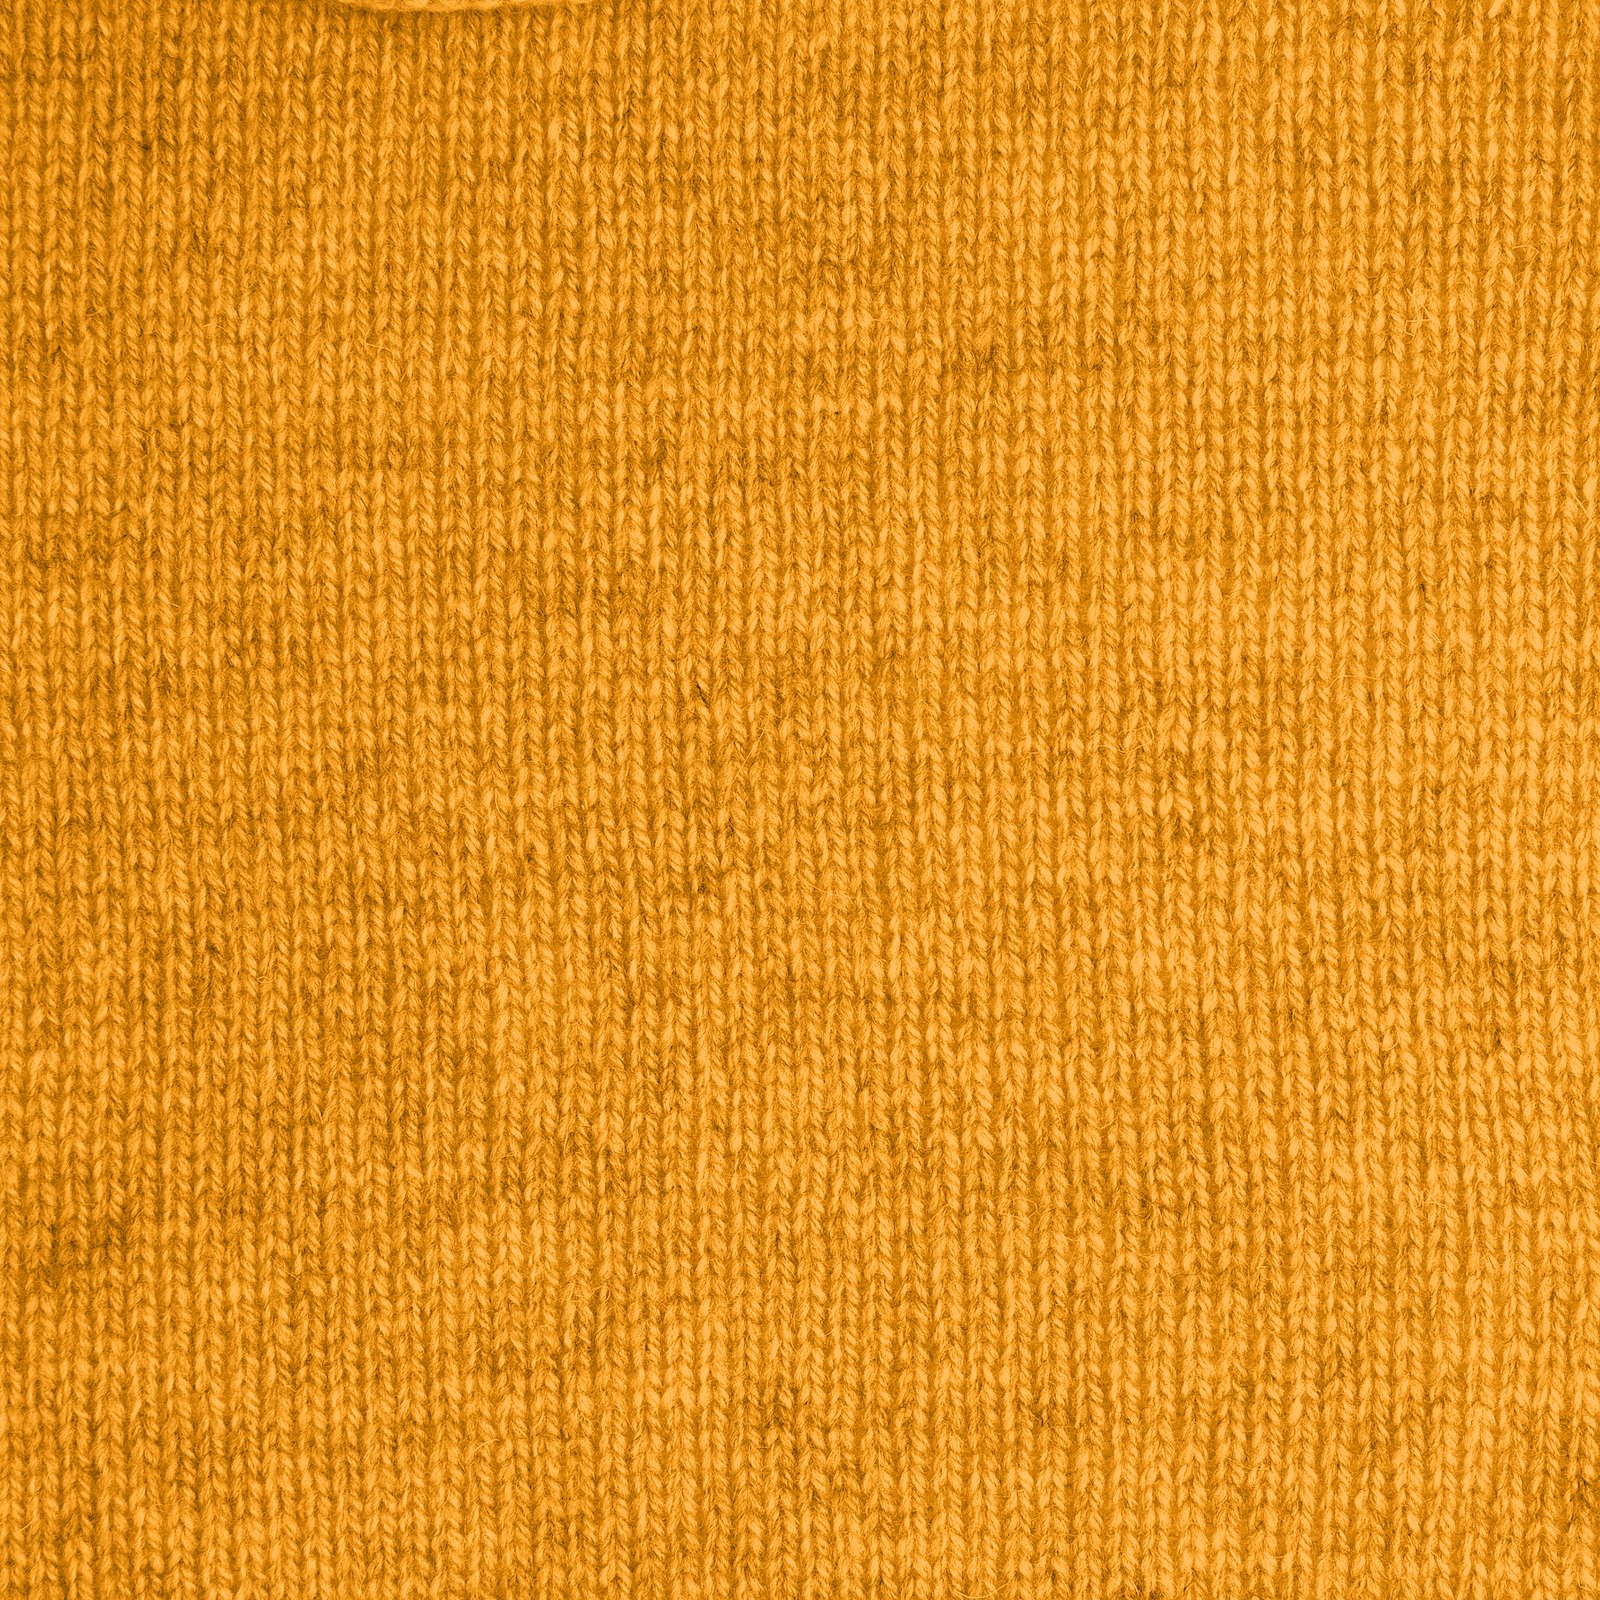 FRAYA, 100% wool yarn "Mindful", sun yellow 90000895_sskit